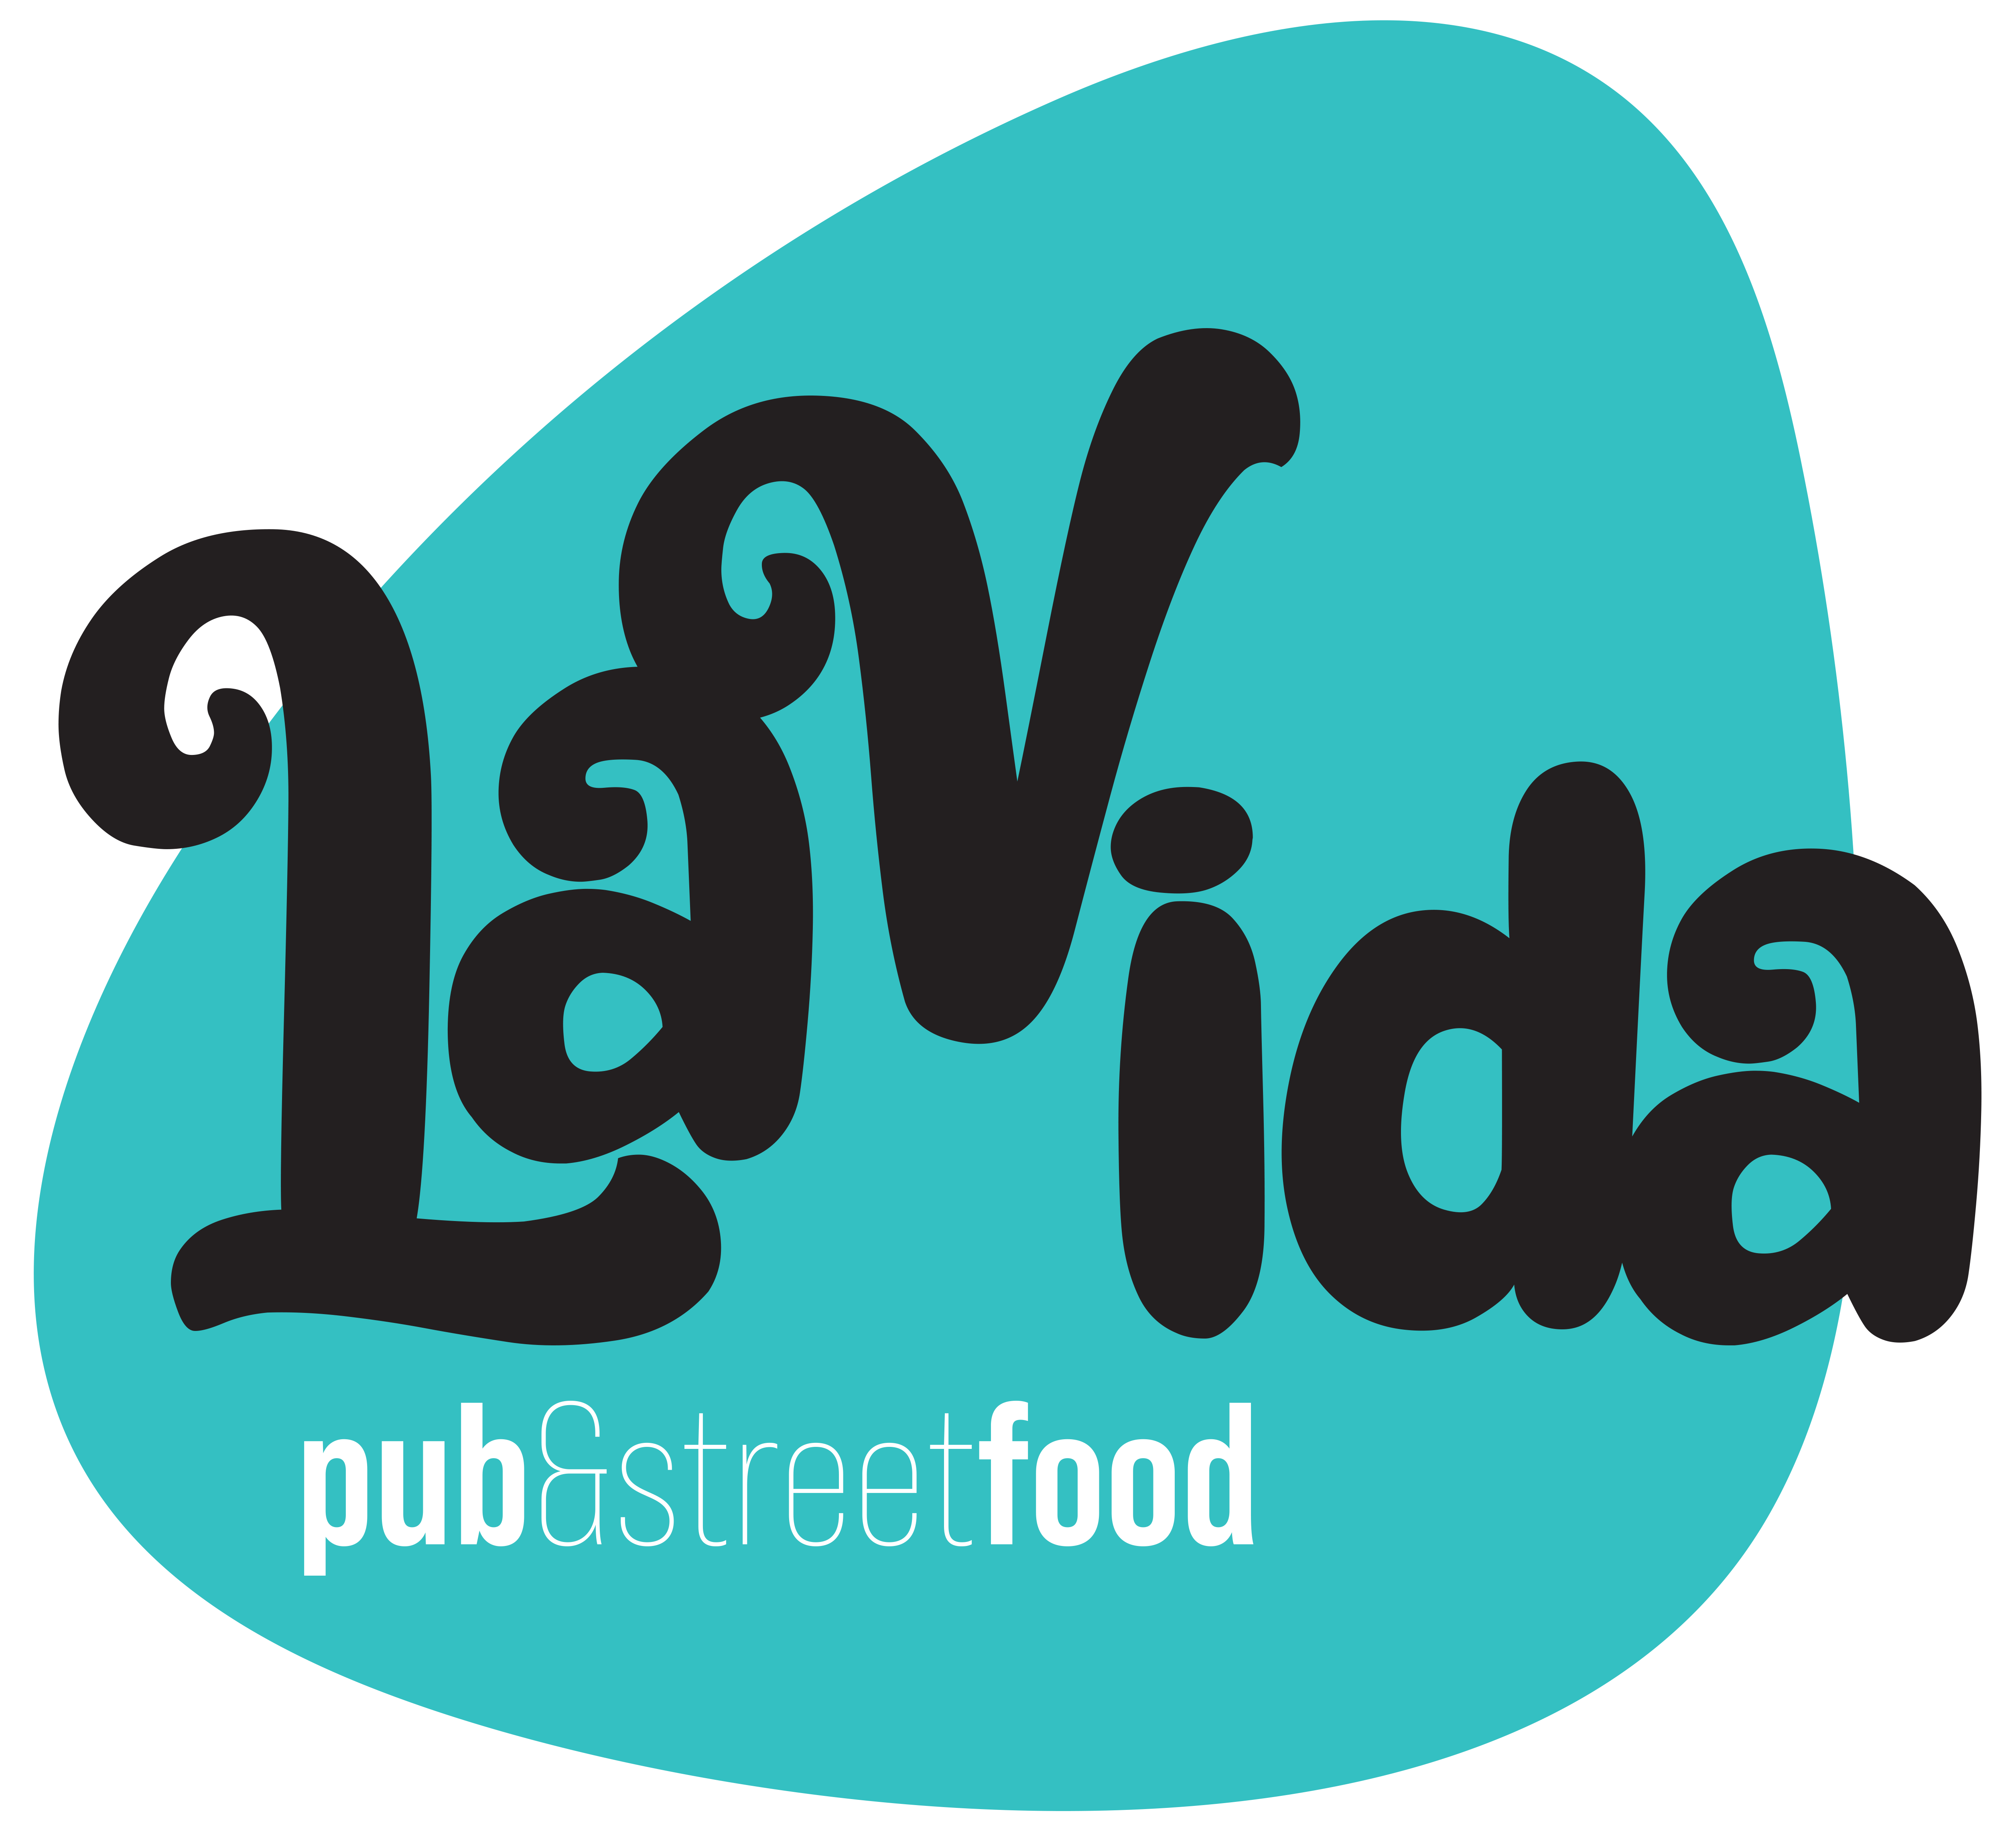 LaVida pub & street food